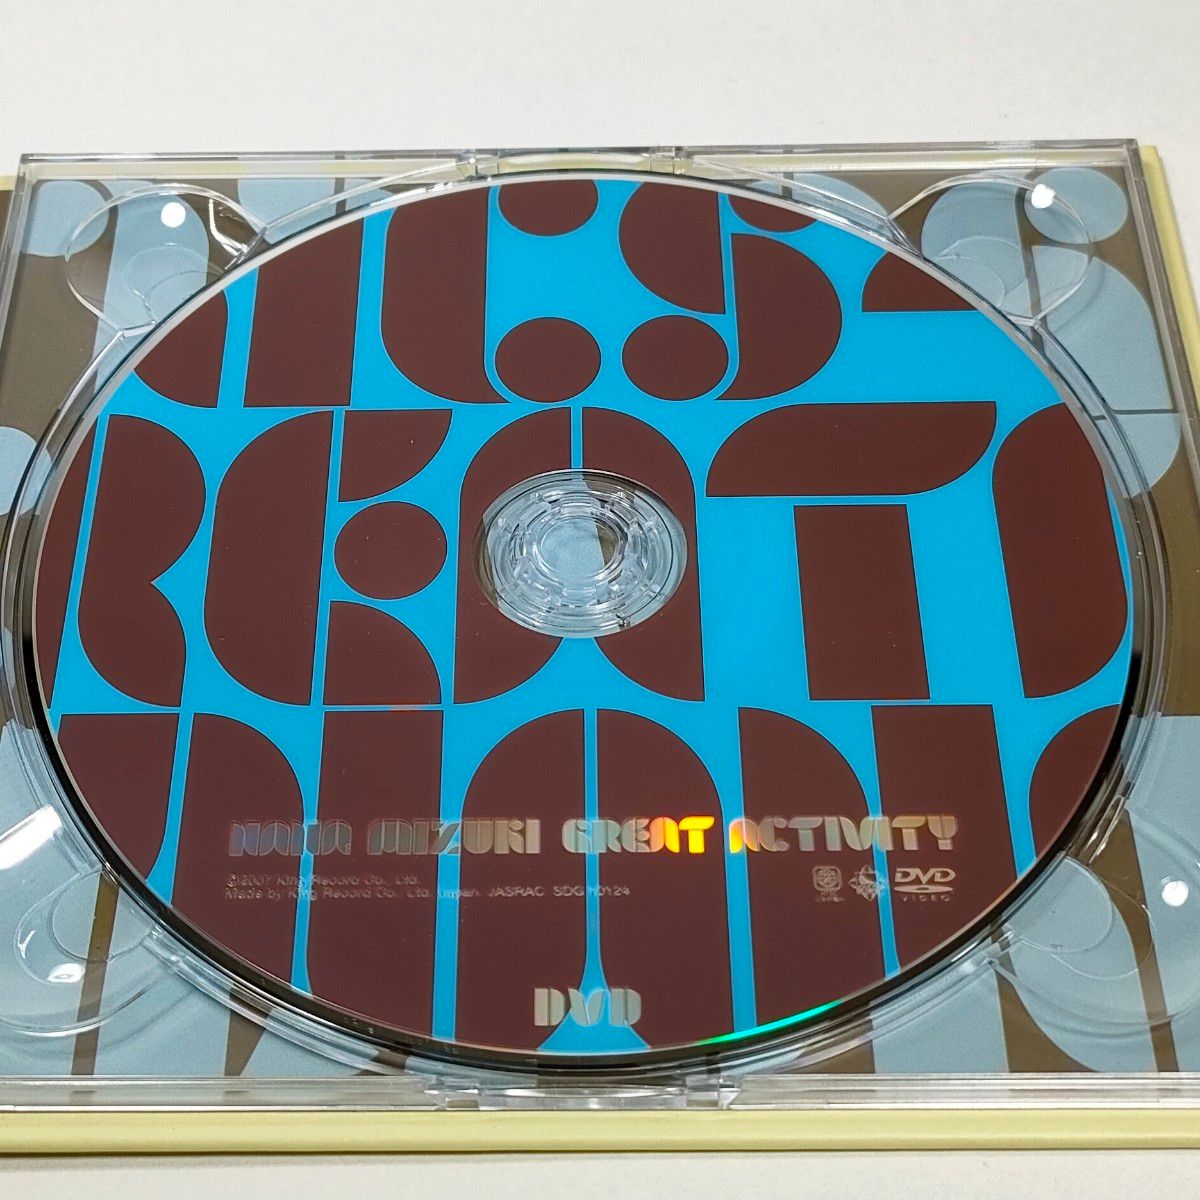 水樹奈々　GREAT ACTIVITY [2007年限定製造盤 CD+DVD]【中古CD】